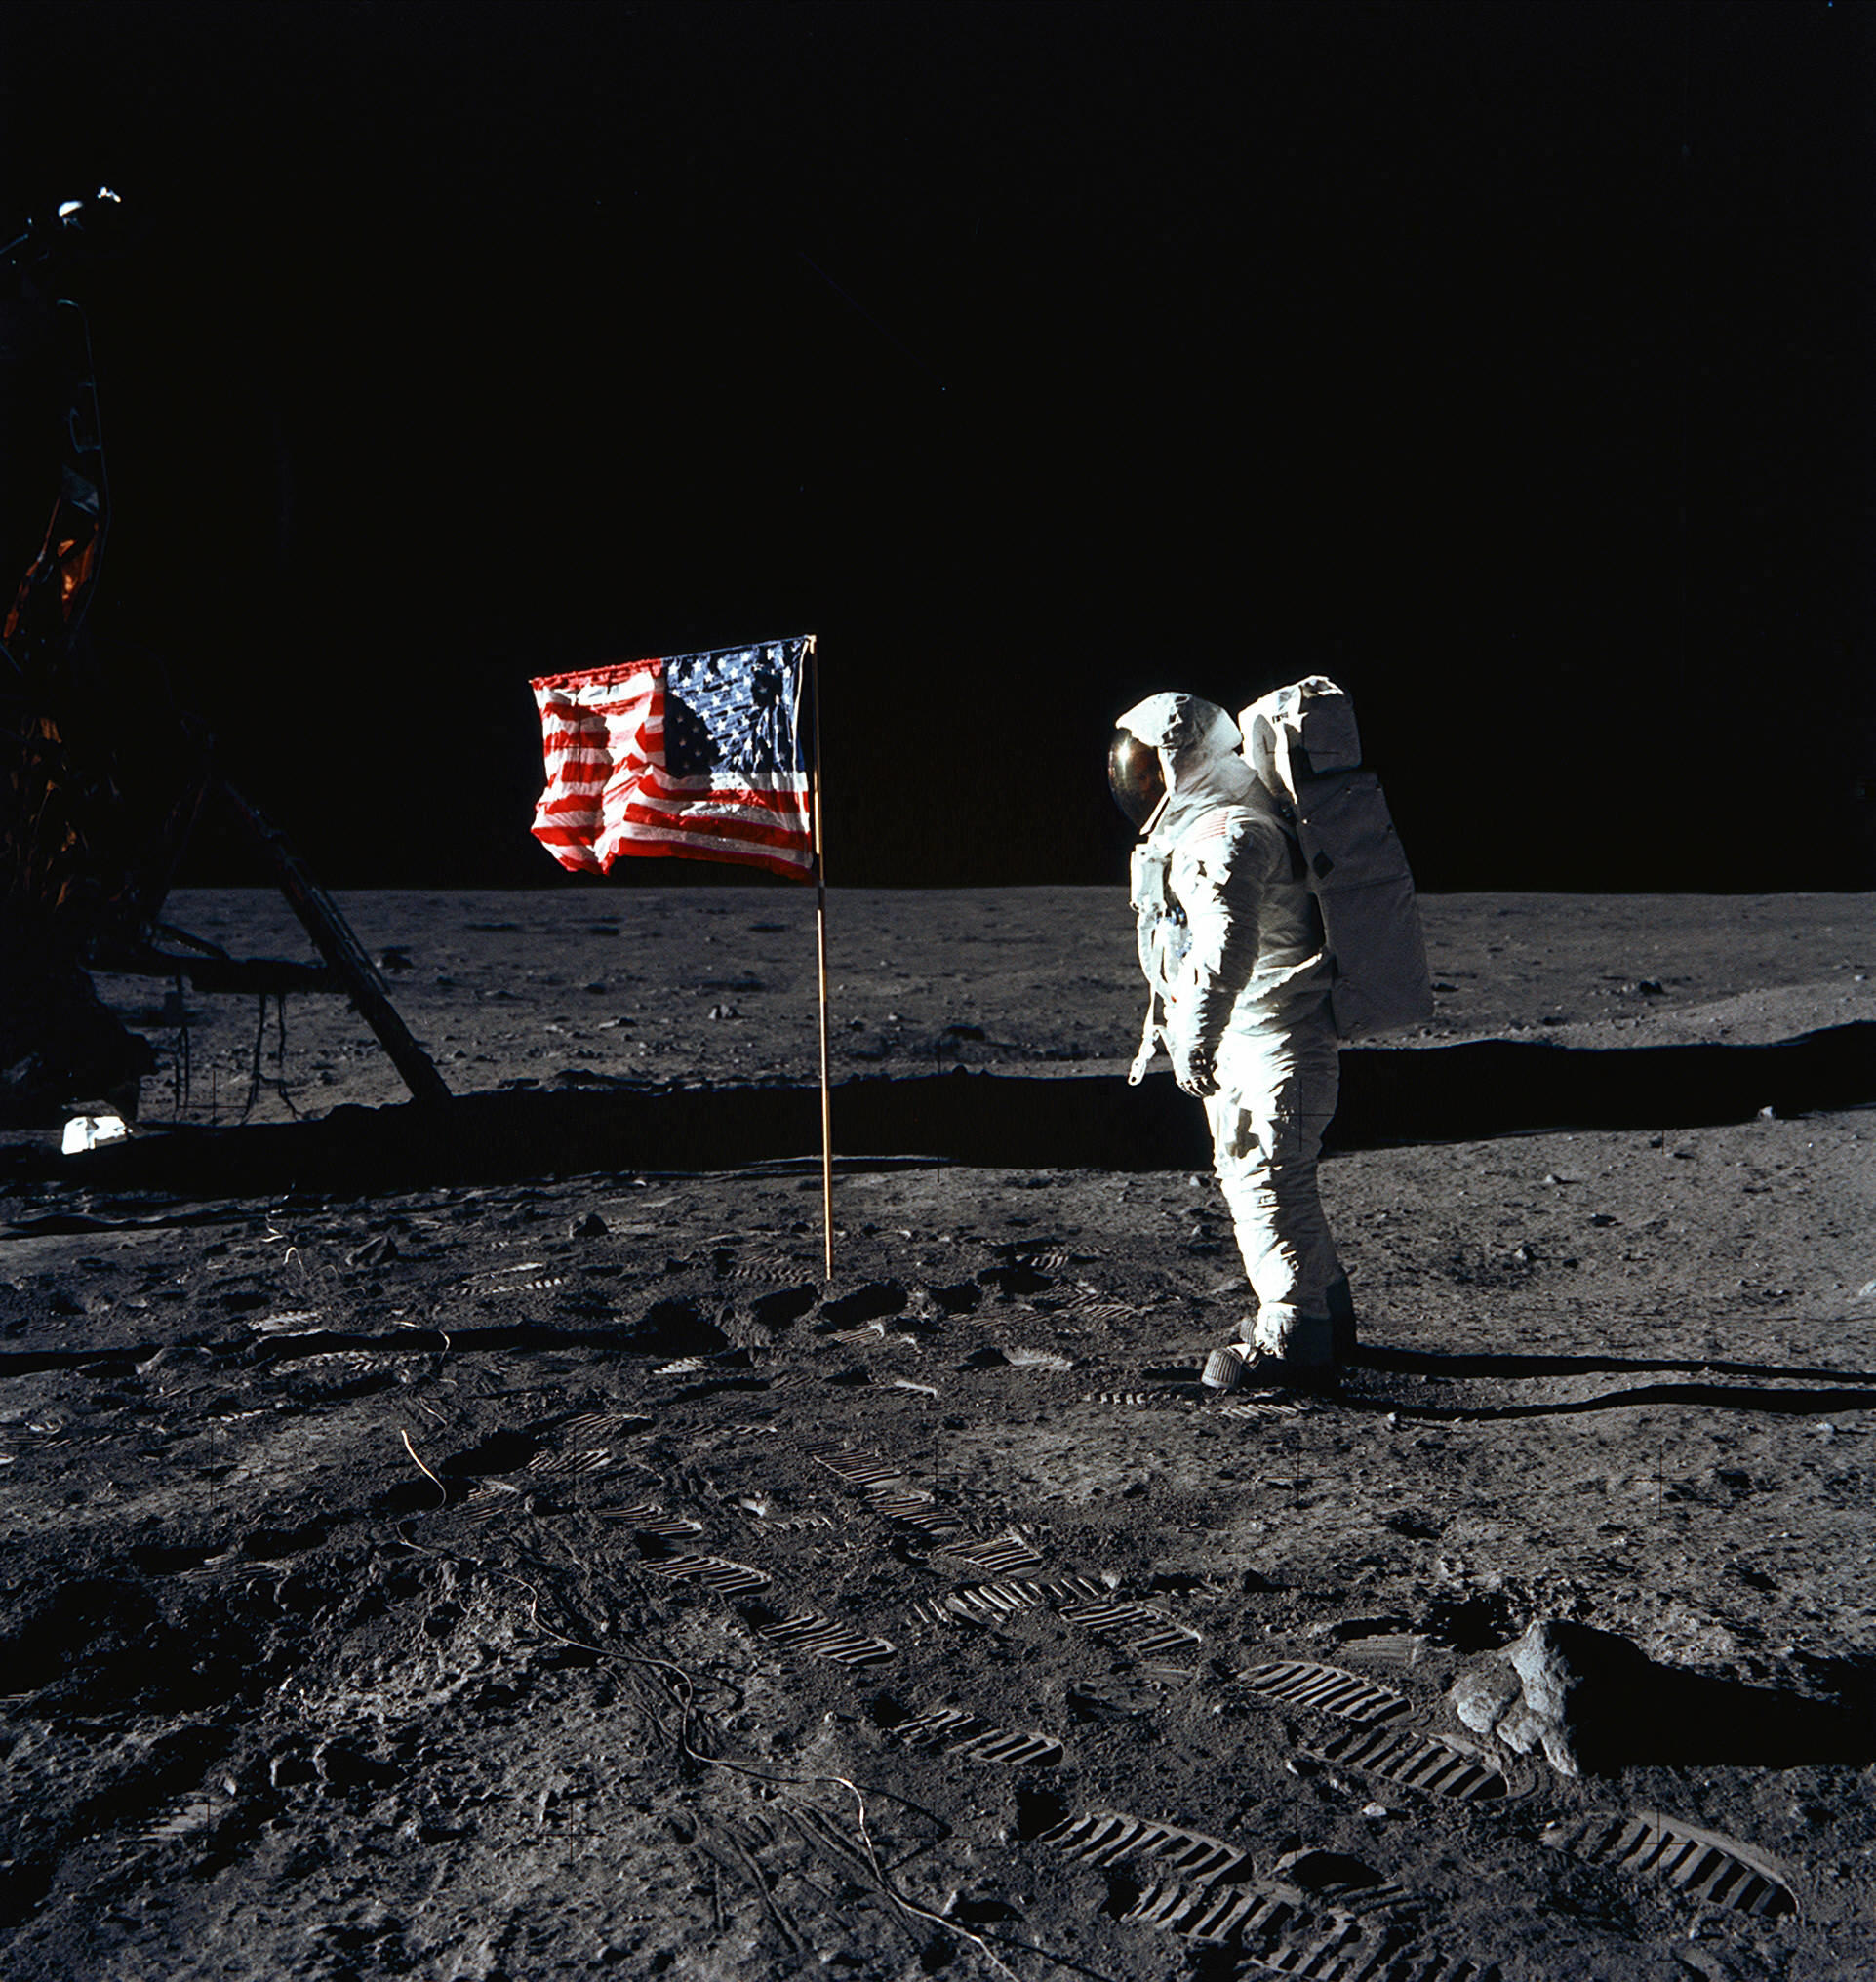 L'astronaute Buzz Aldrin photographié face au drapeau américain sur la surface de la Lune, le 21 juillet 1969, par Neil Armstrong, commandant de la mission Apollo 11. AFP/Nasa/Neil Armstrong